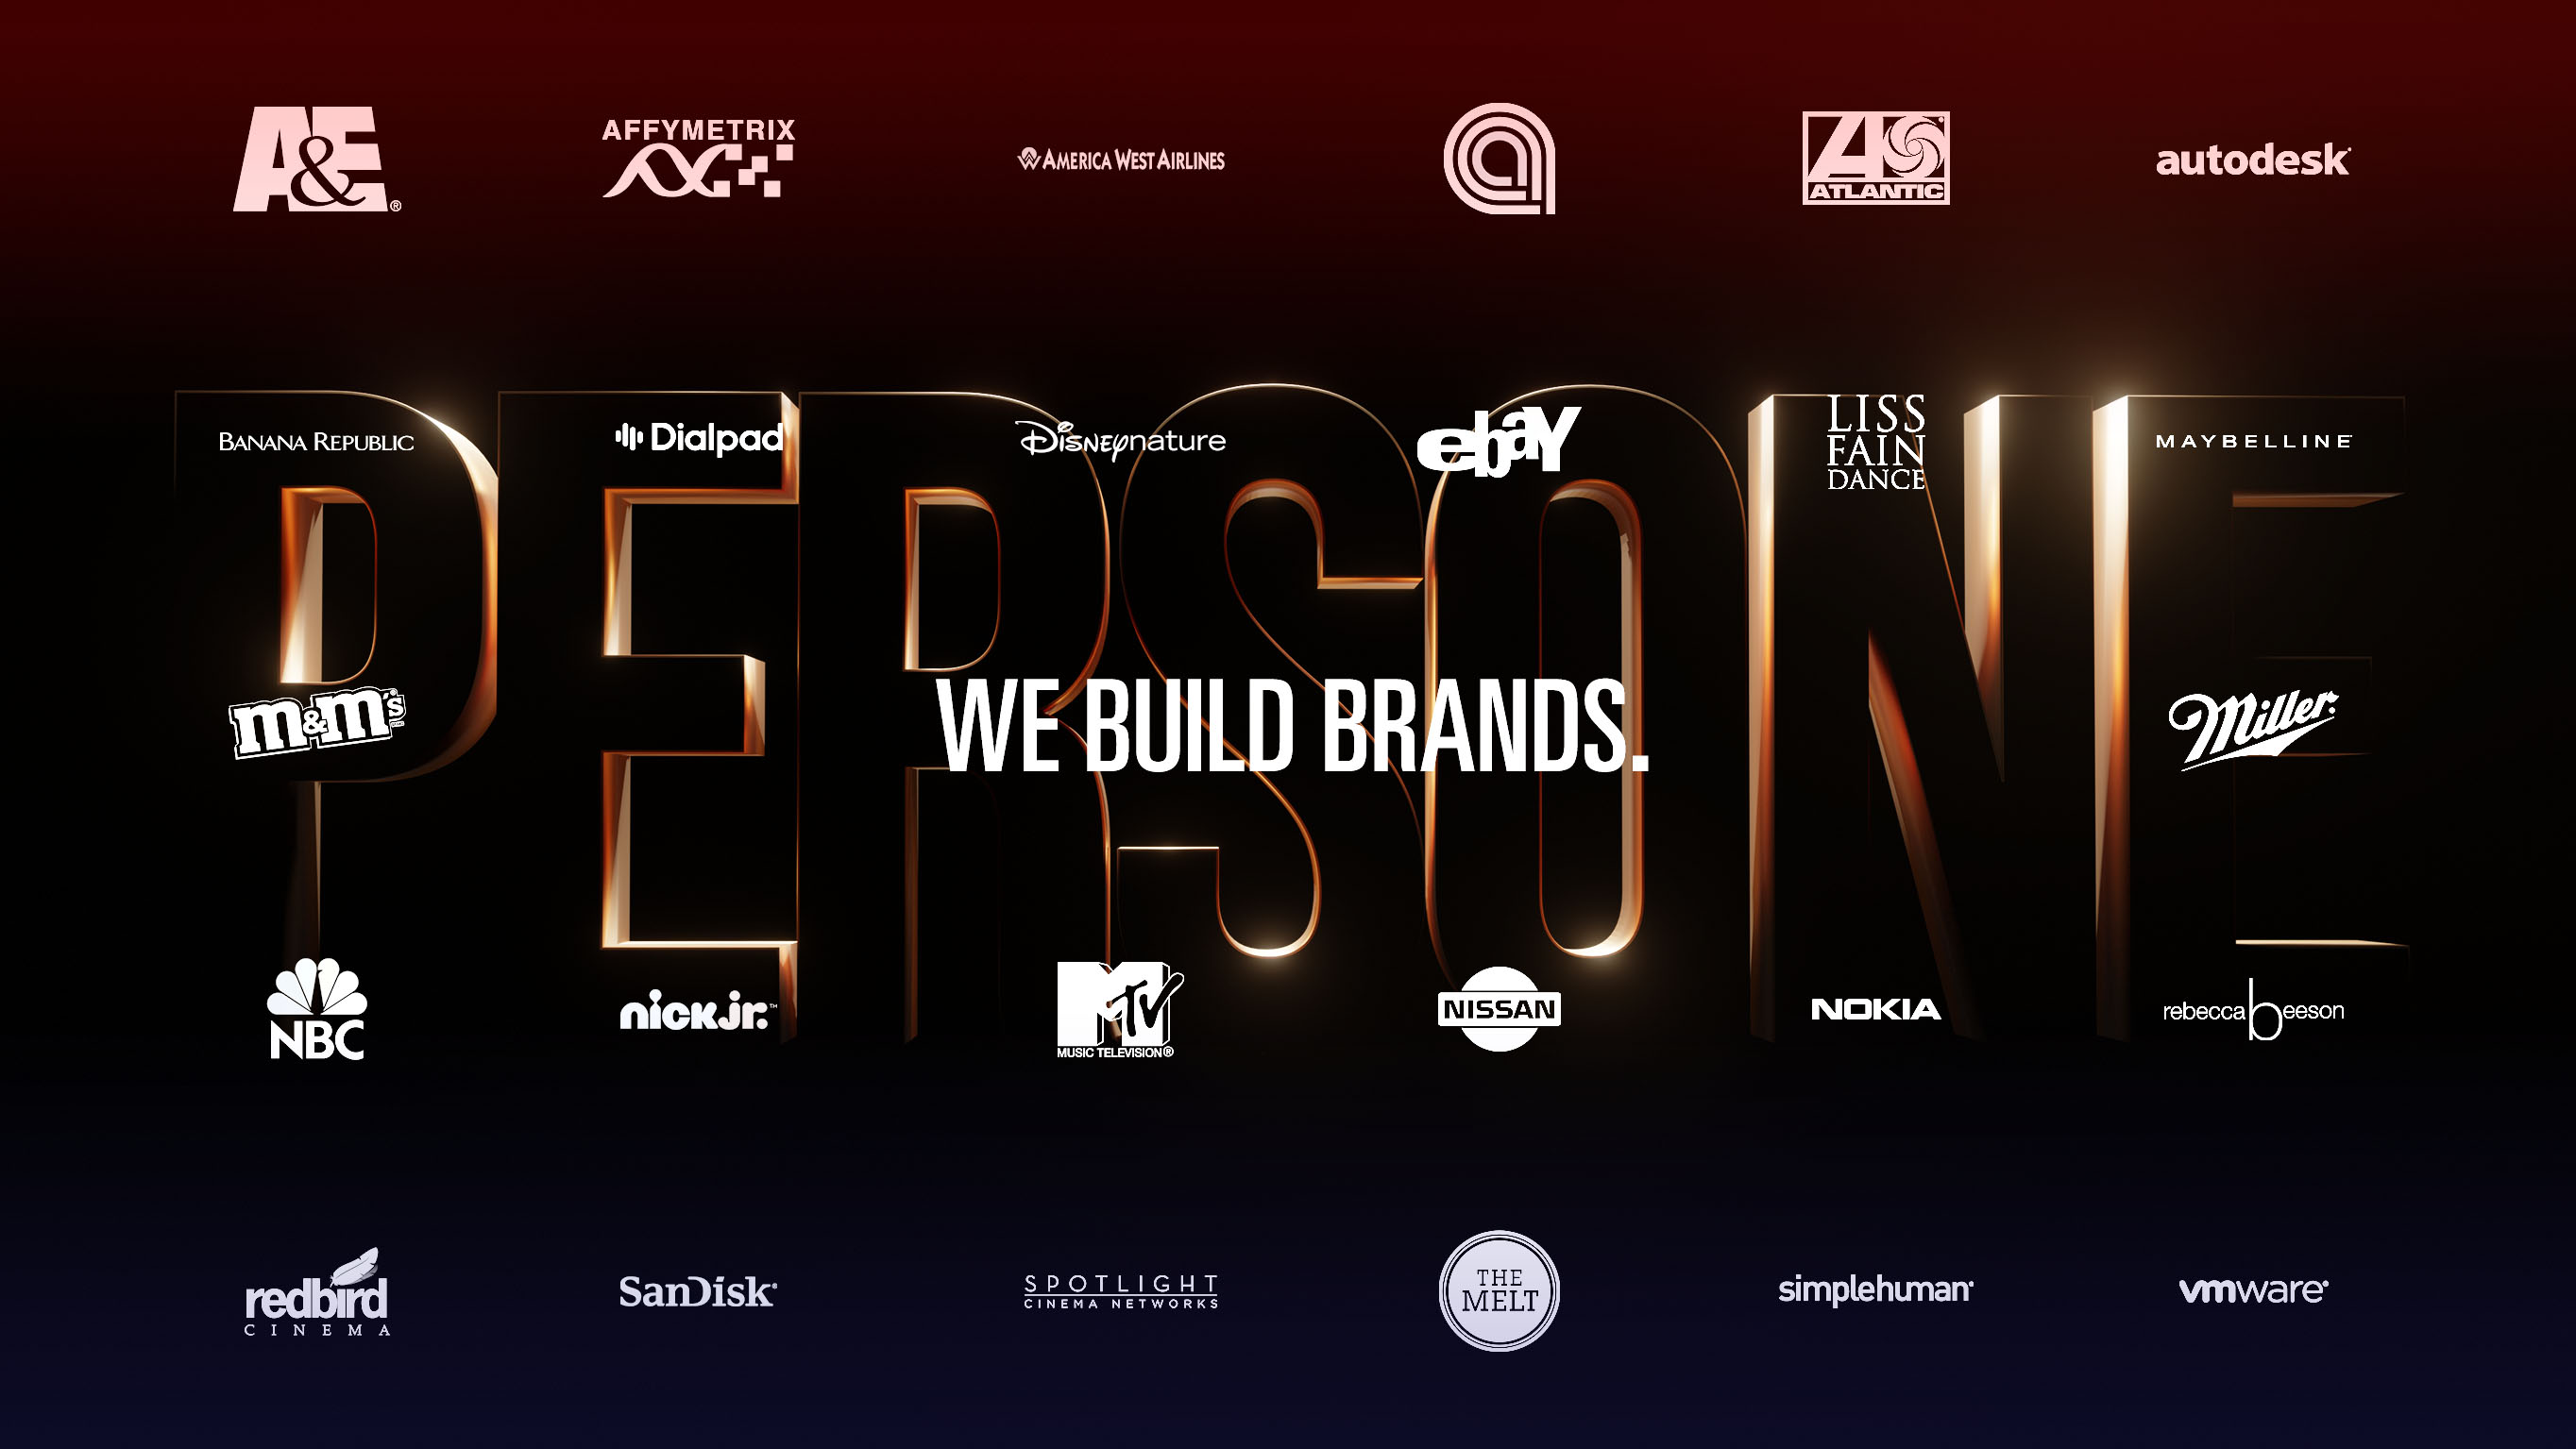 We build brands.